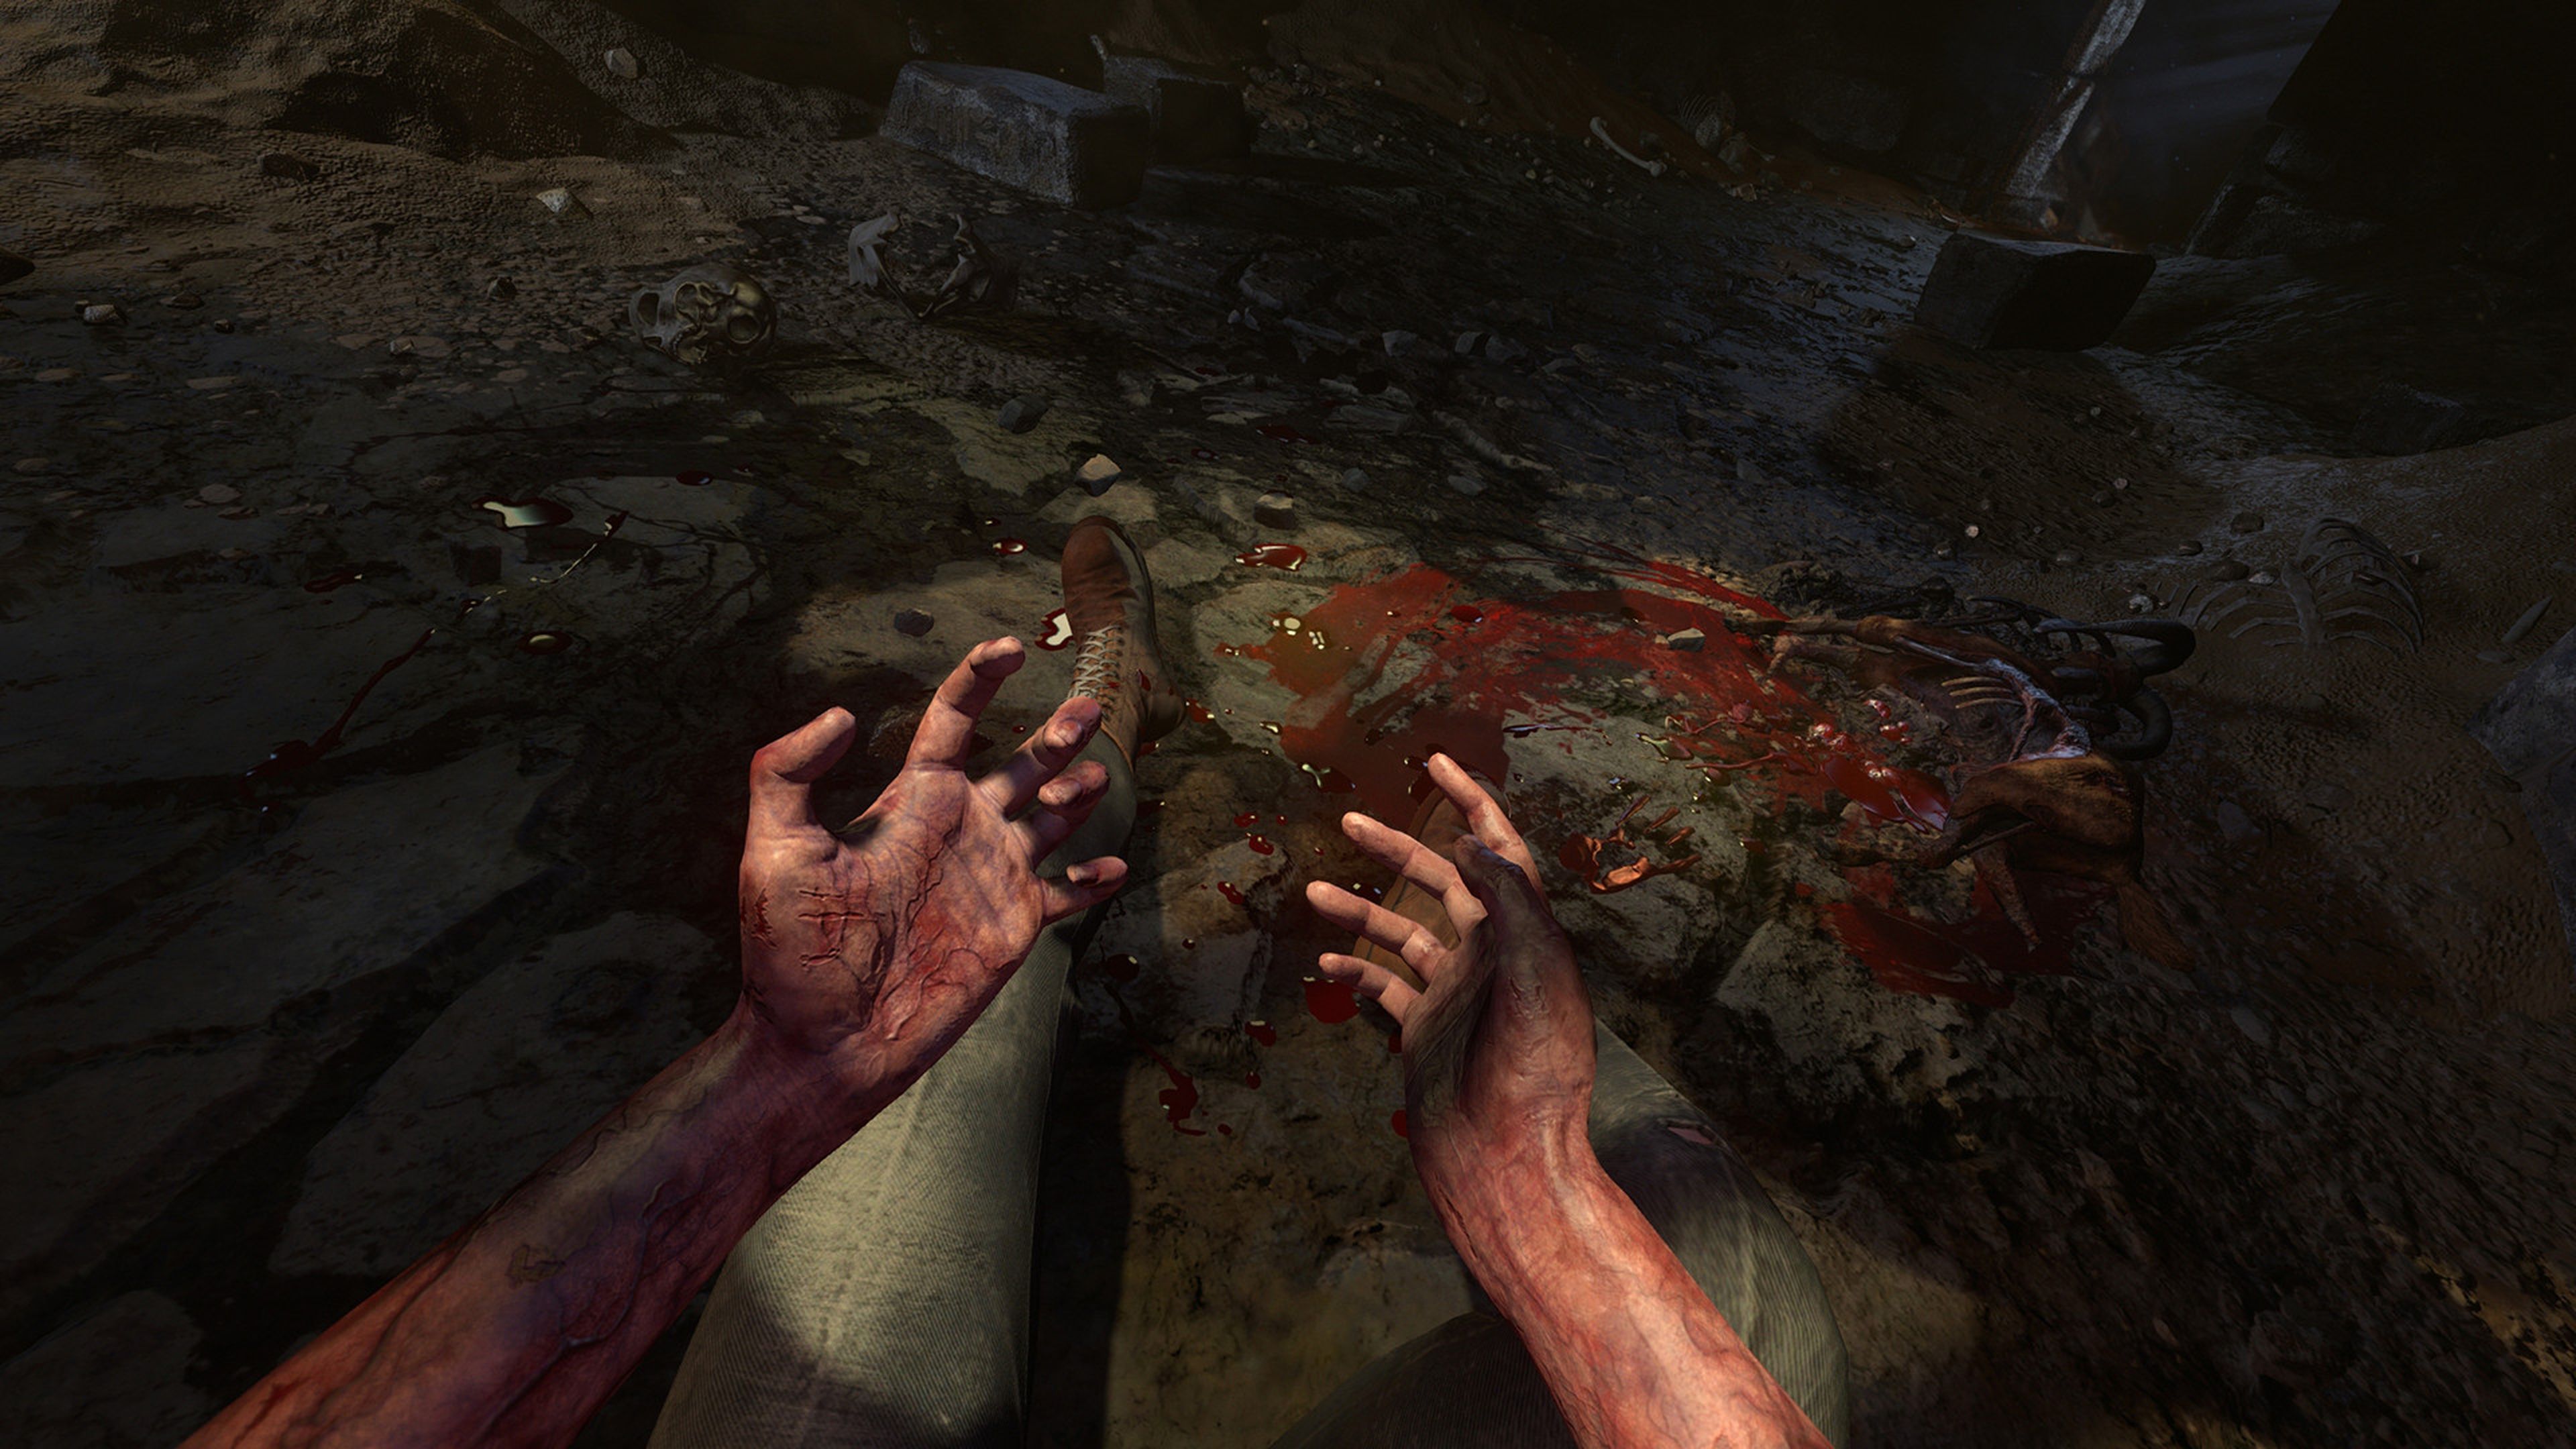 The Last of Us 2: el terror y el apocalipsis regresan a PS4